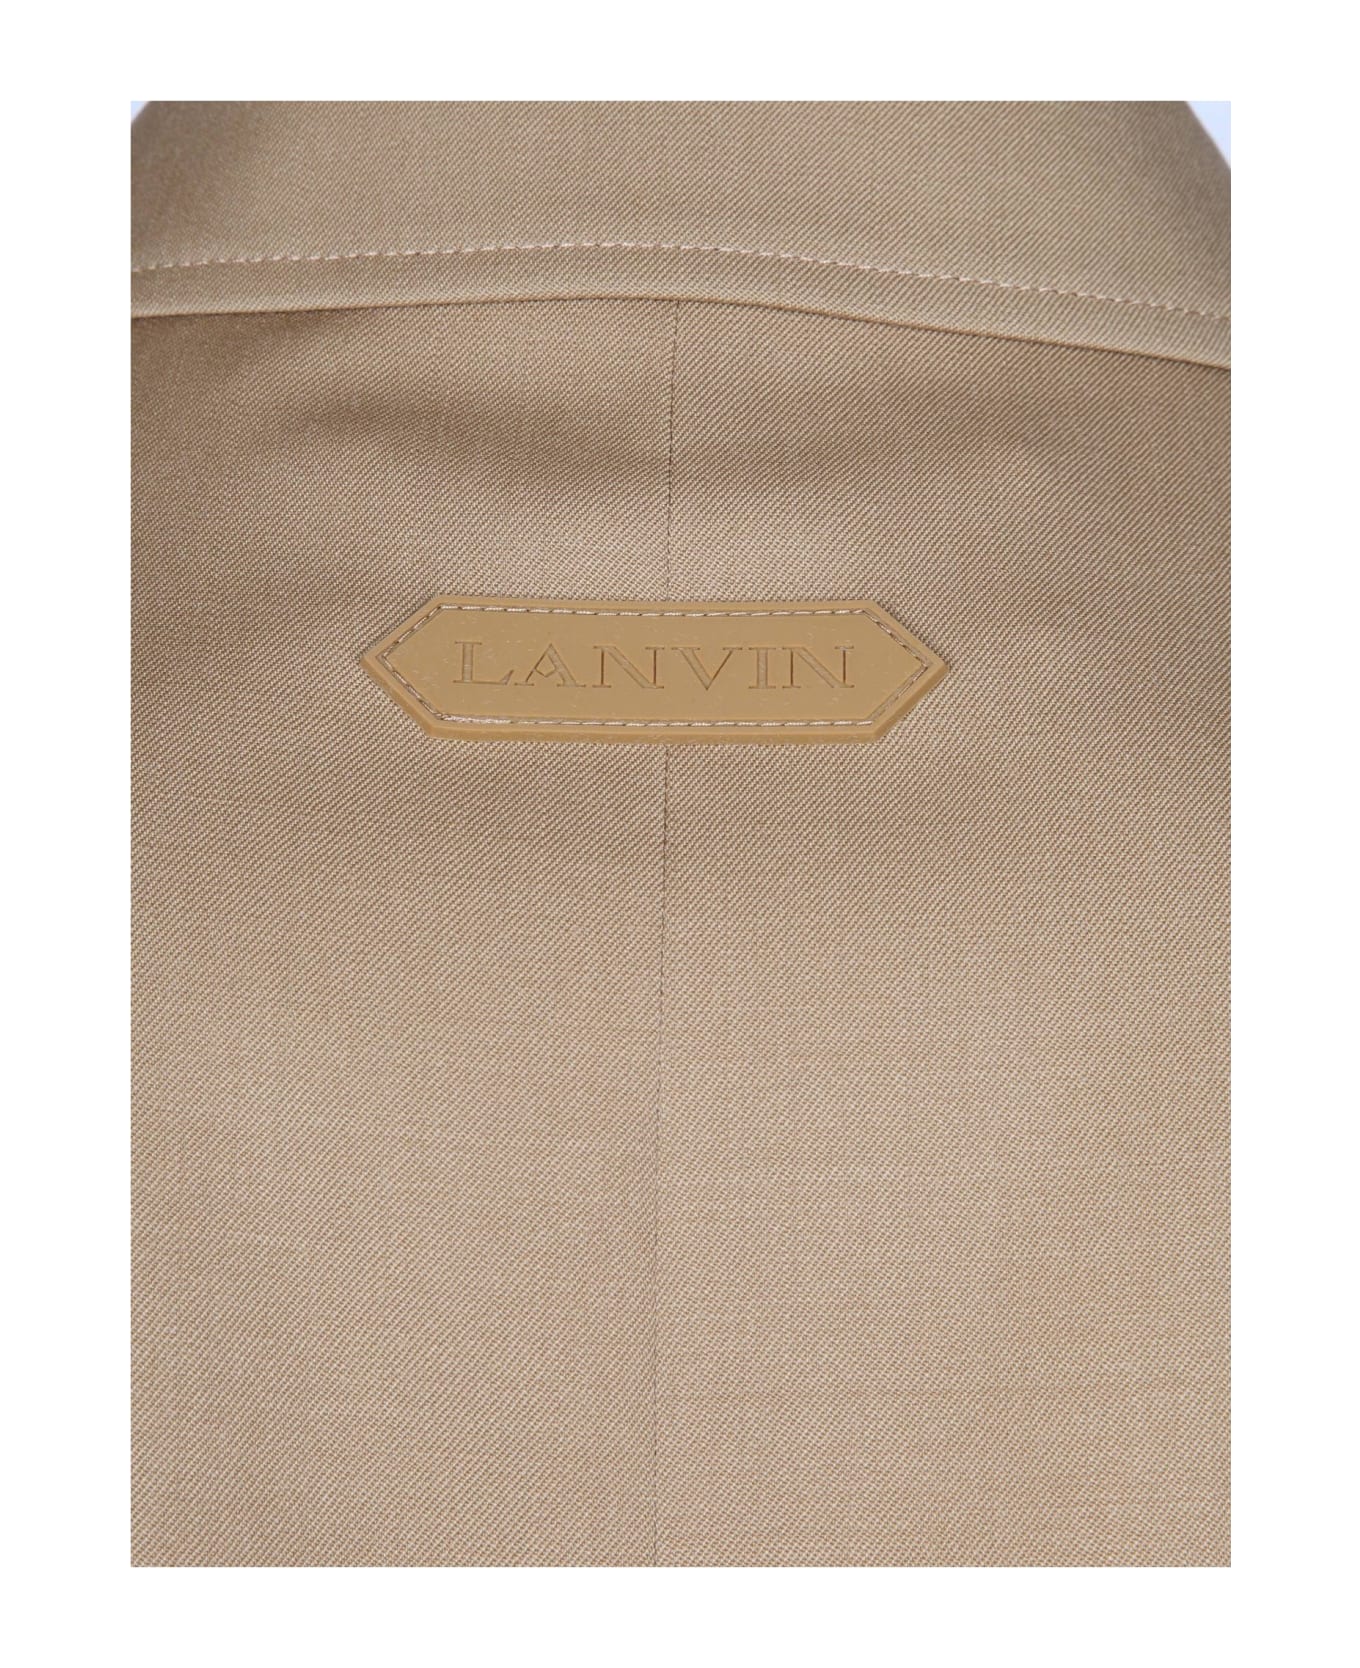 Lanvin Wool Jacket With Zip Desert Color - Desert